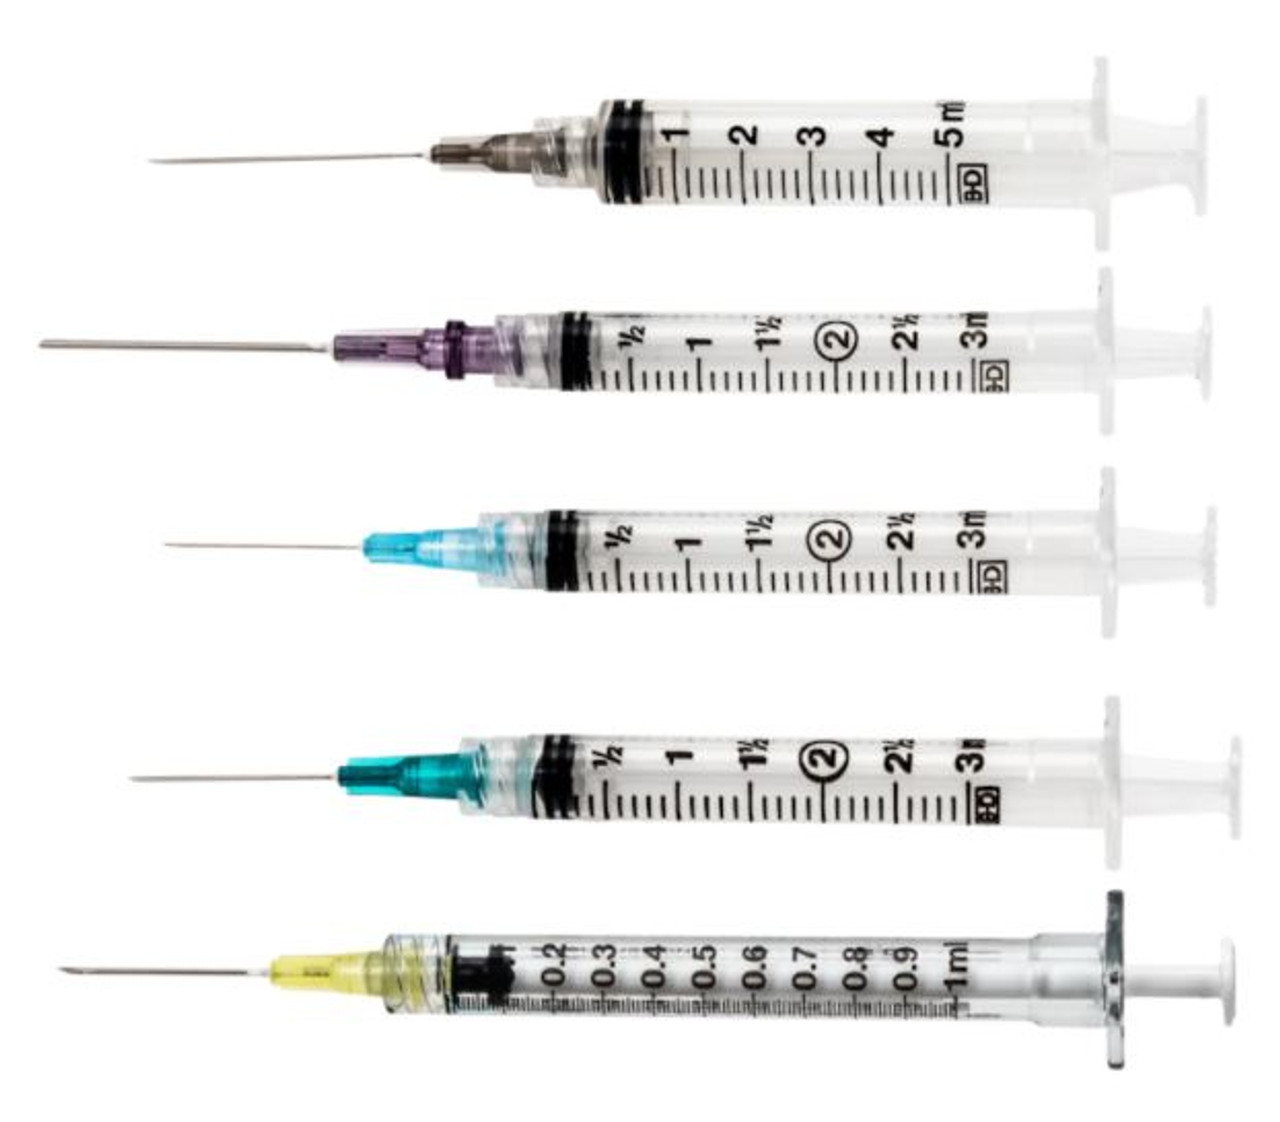 3cc Syringe Needle